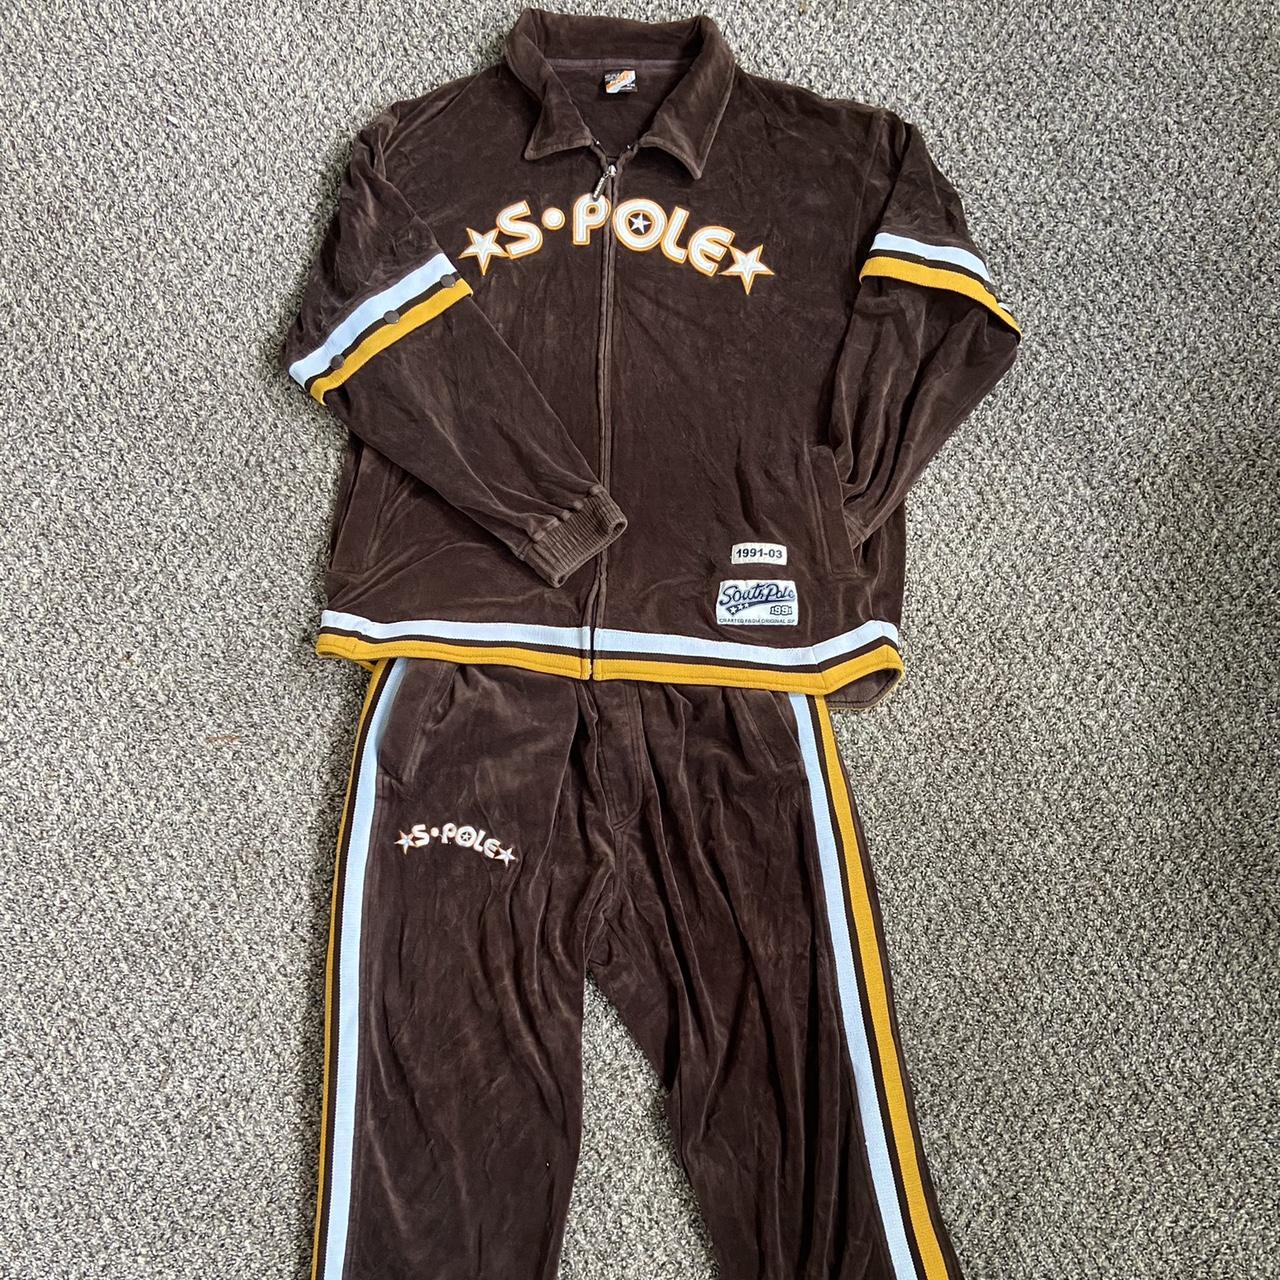 Vintage Southpole track suit set. Brown Southpole... - Depop